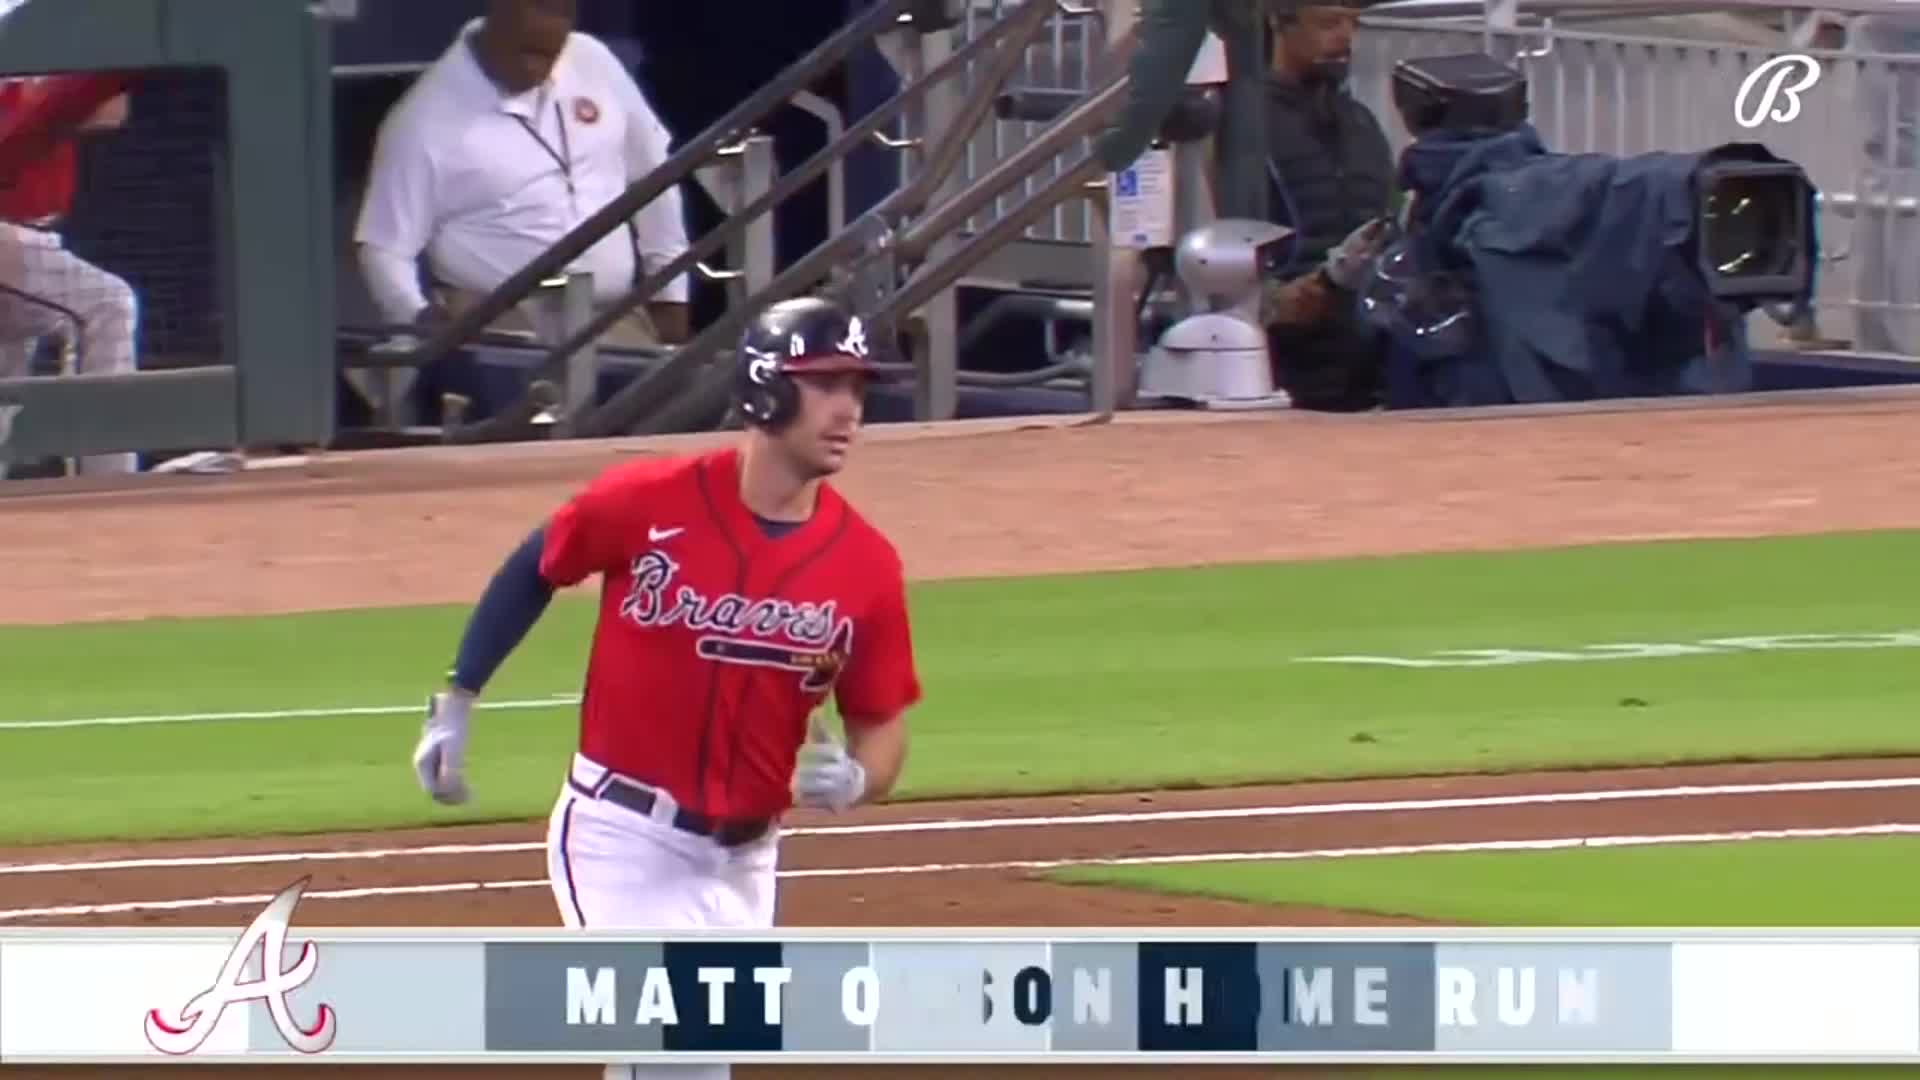 Matt Olson homers in return, Braves hang on against A's